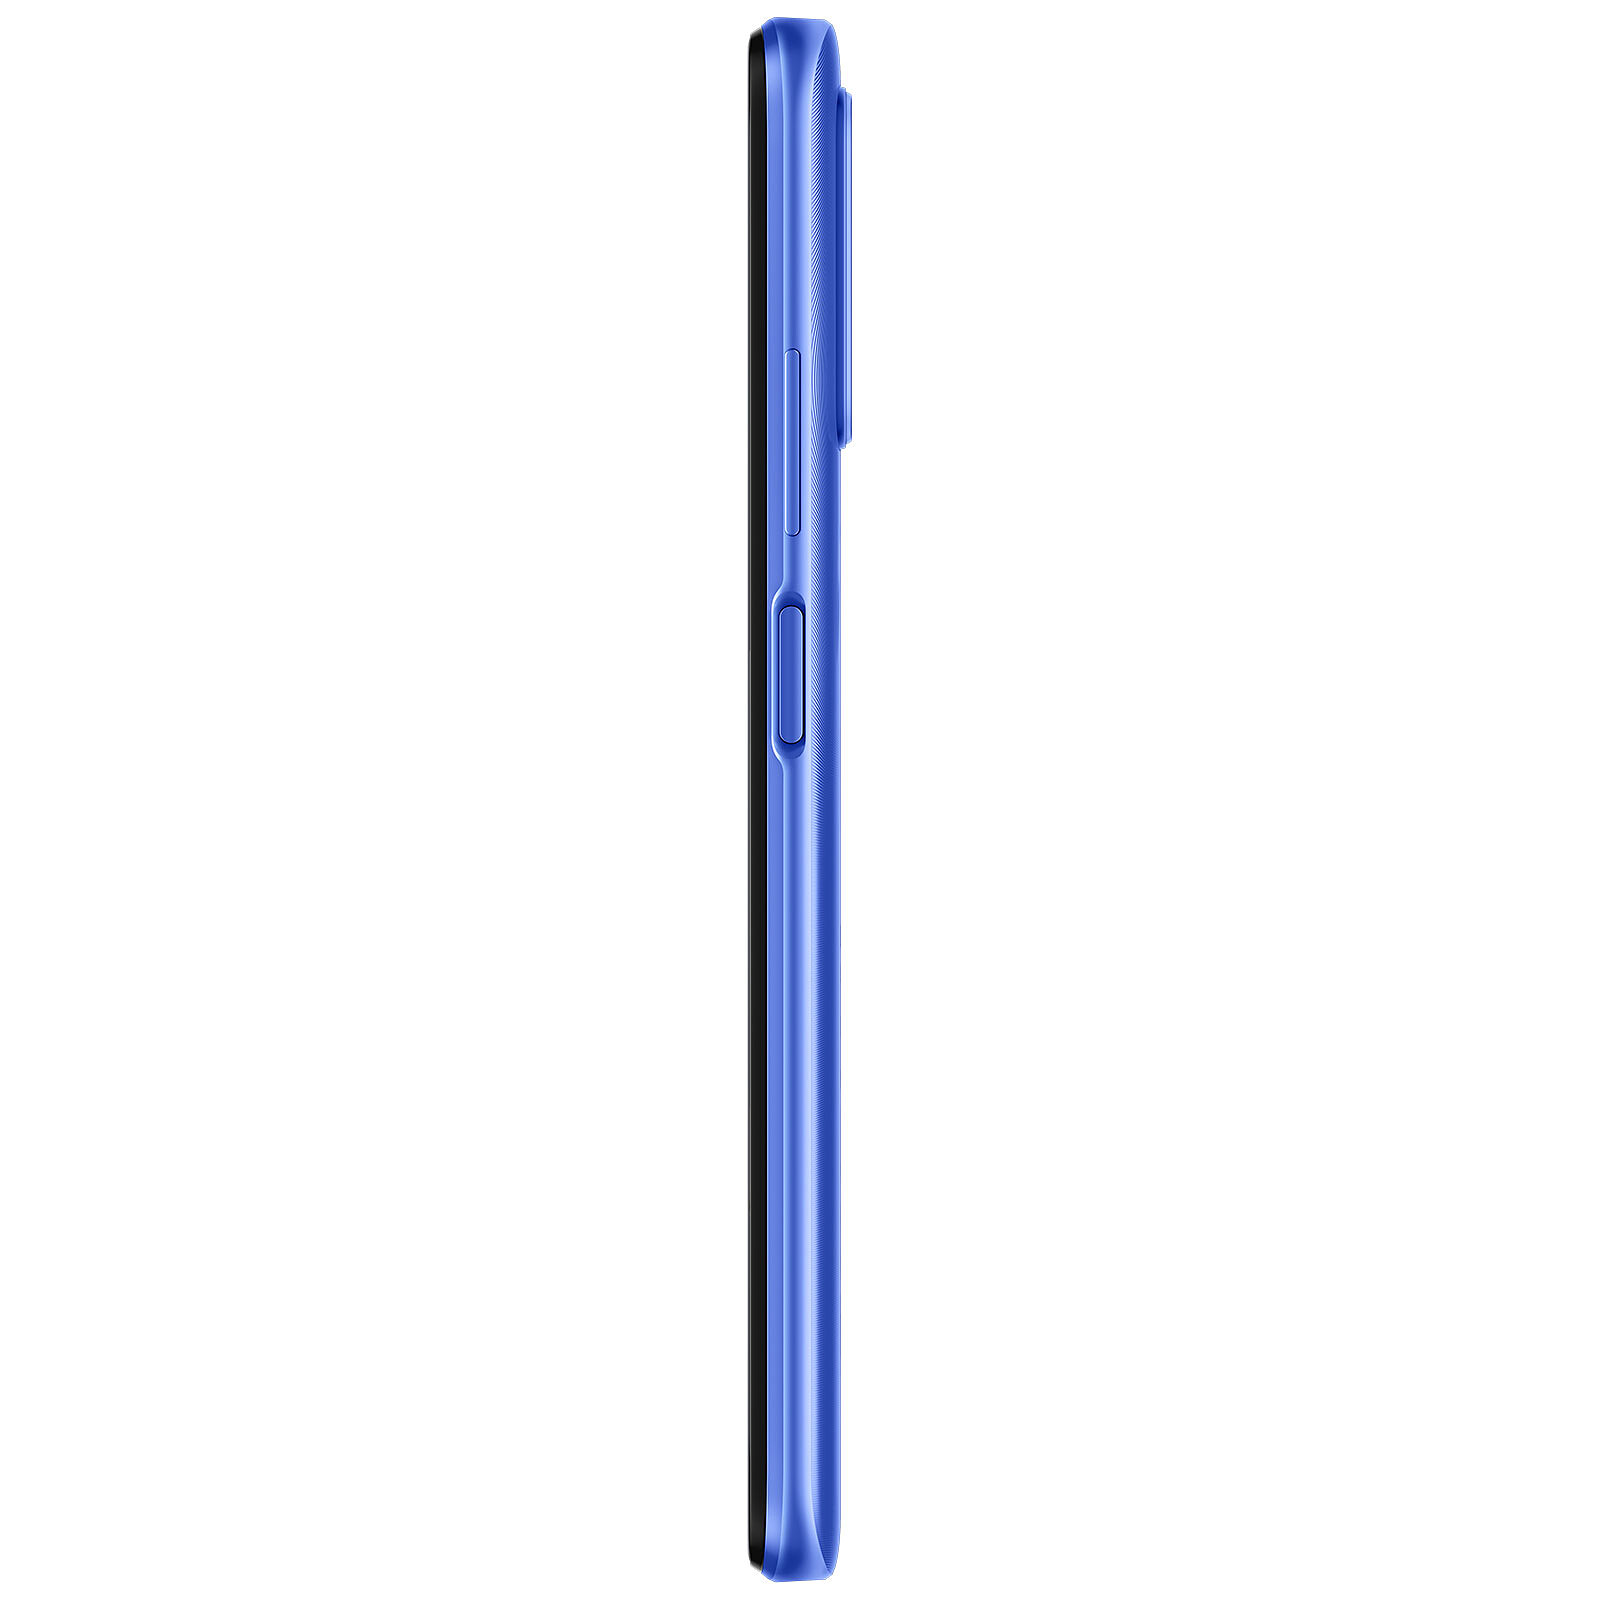 Xiaomi Redmi 9T Blue (4GB / 64GB) - Mobile phone & smartphone 